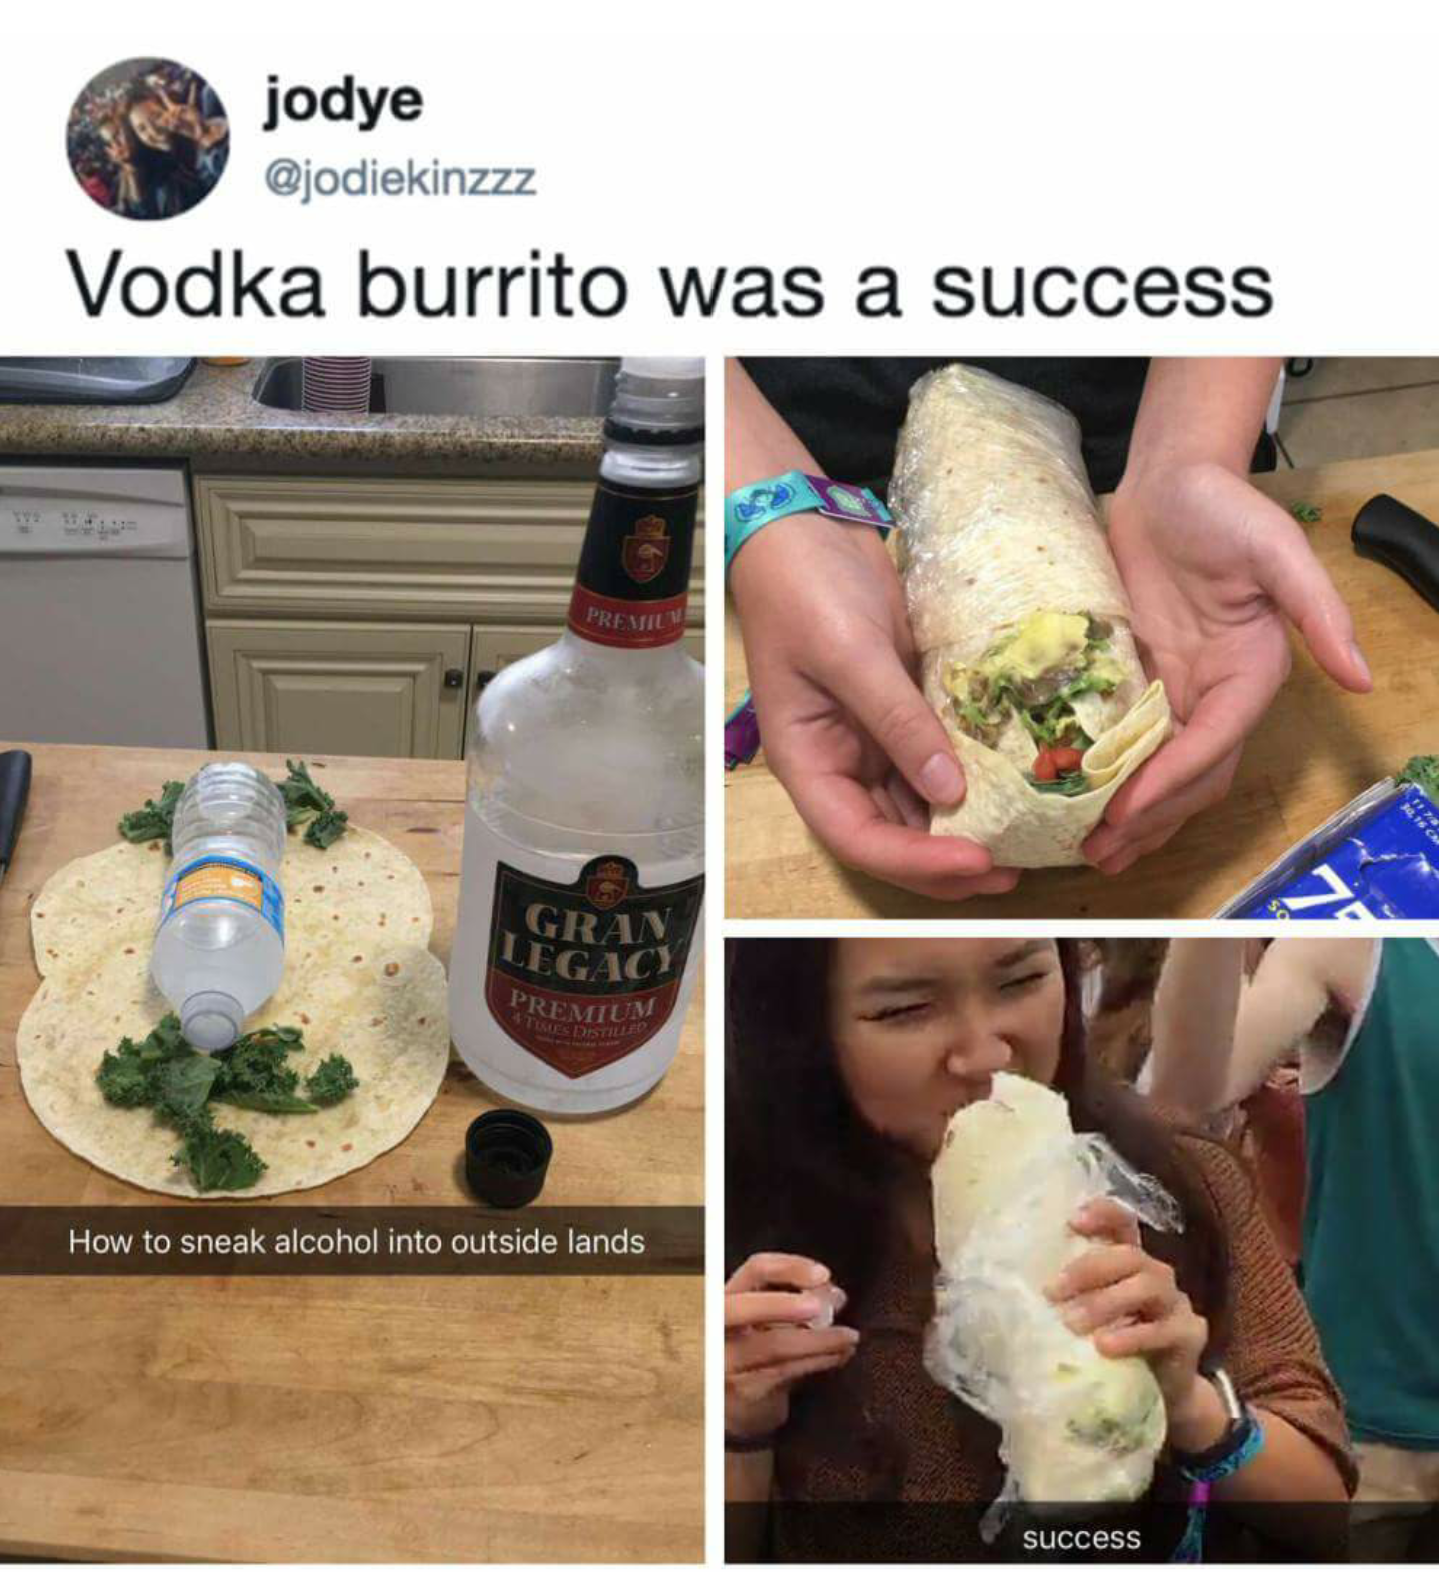 Smuggling vodka in a burrito